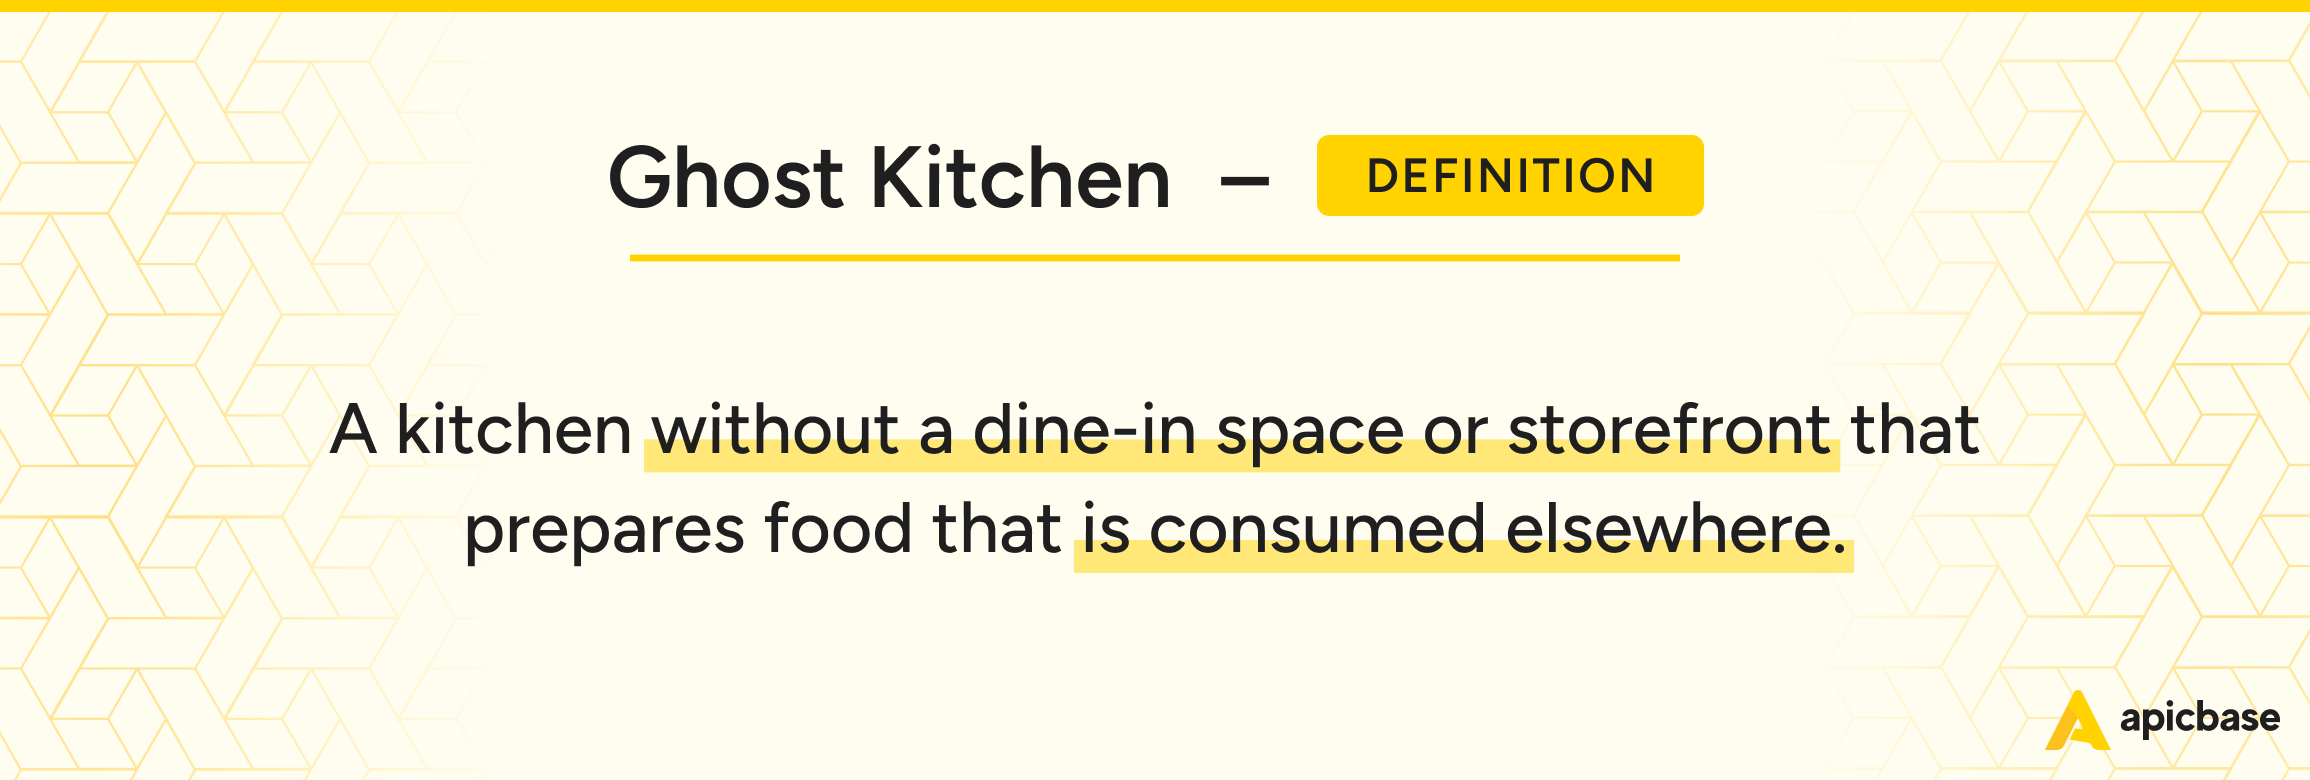 Ghost Kitchen Definition